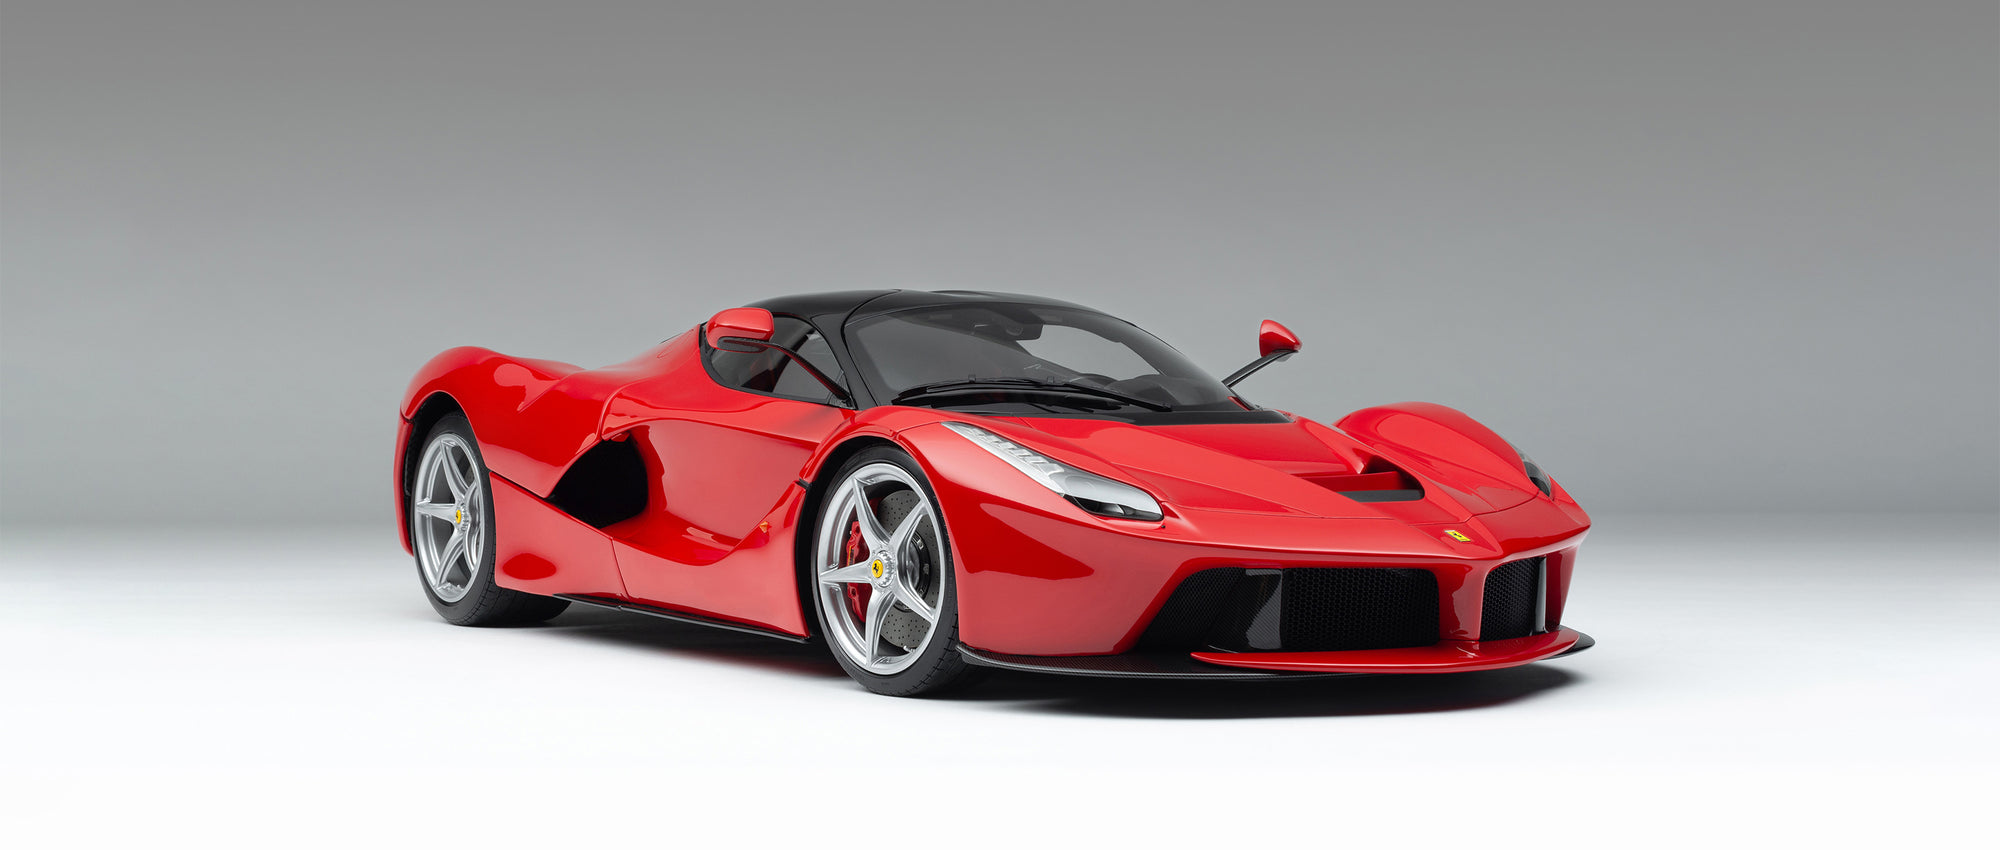 Ferrari LaFerrari (2013) – Collection